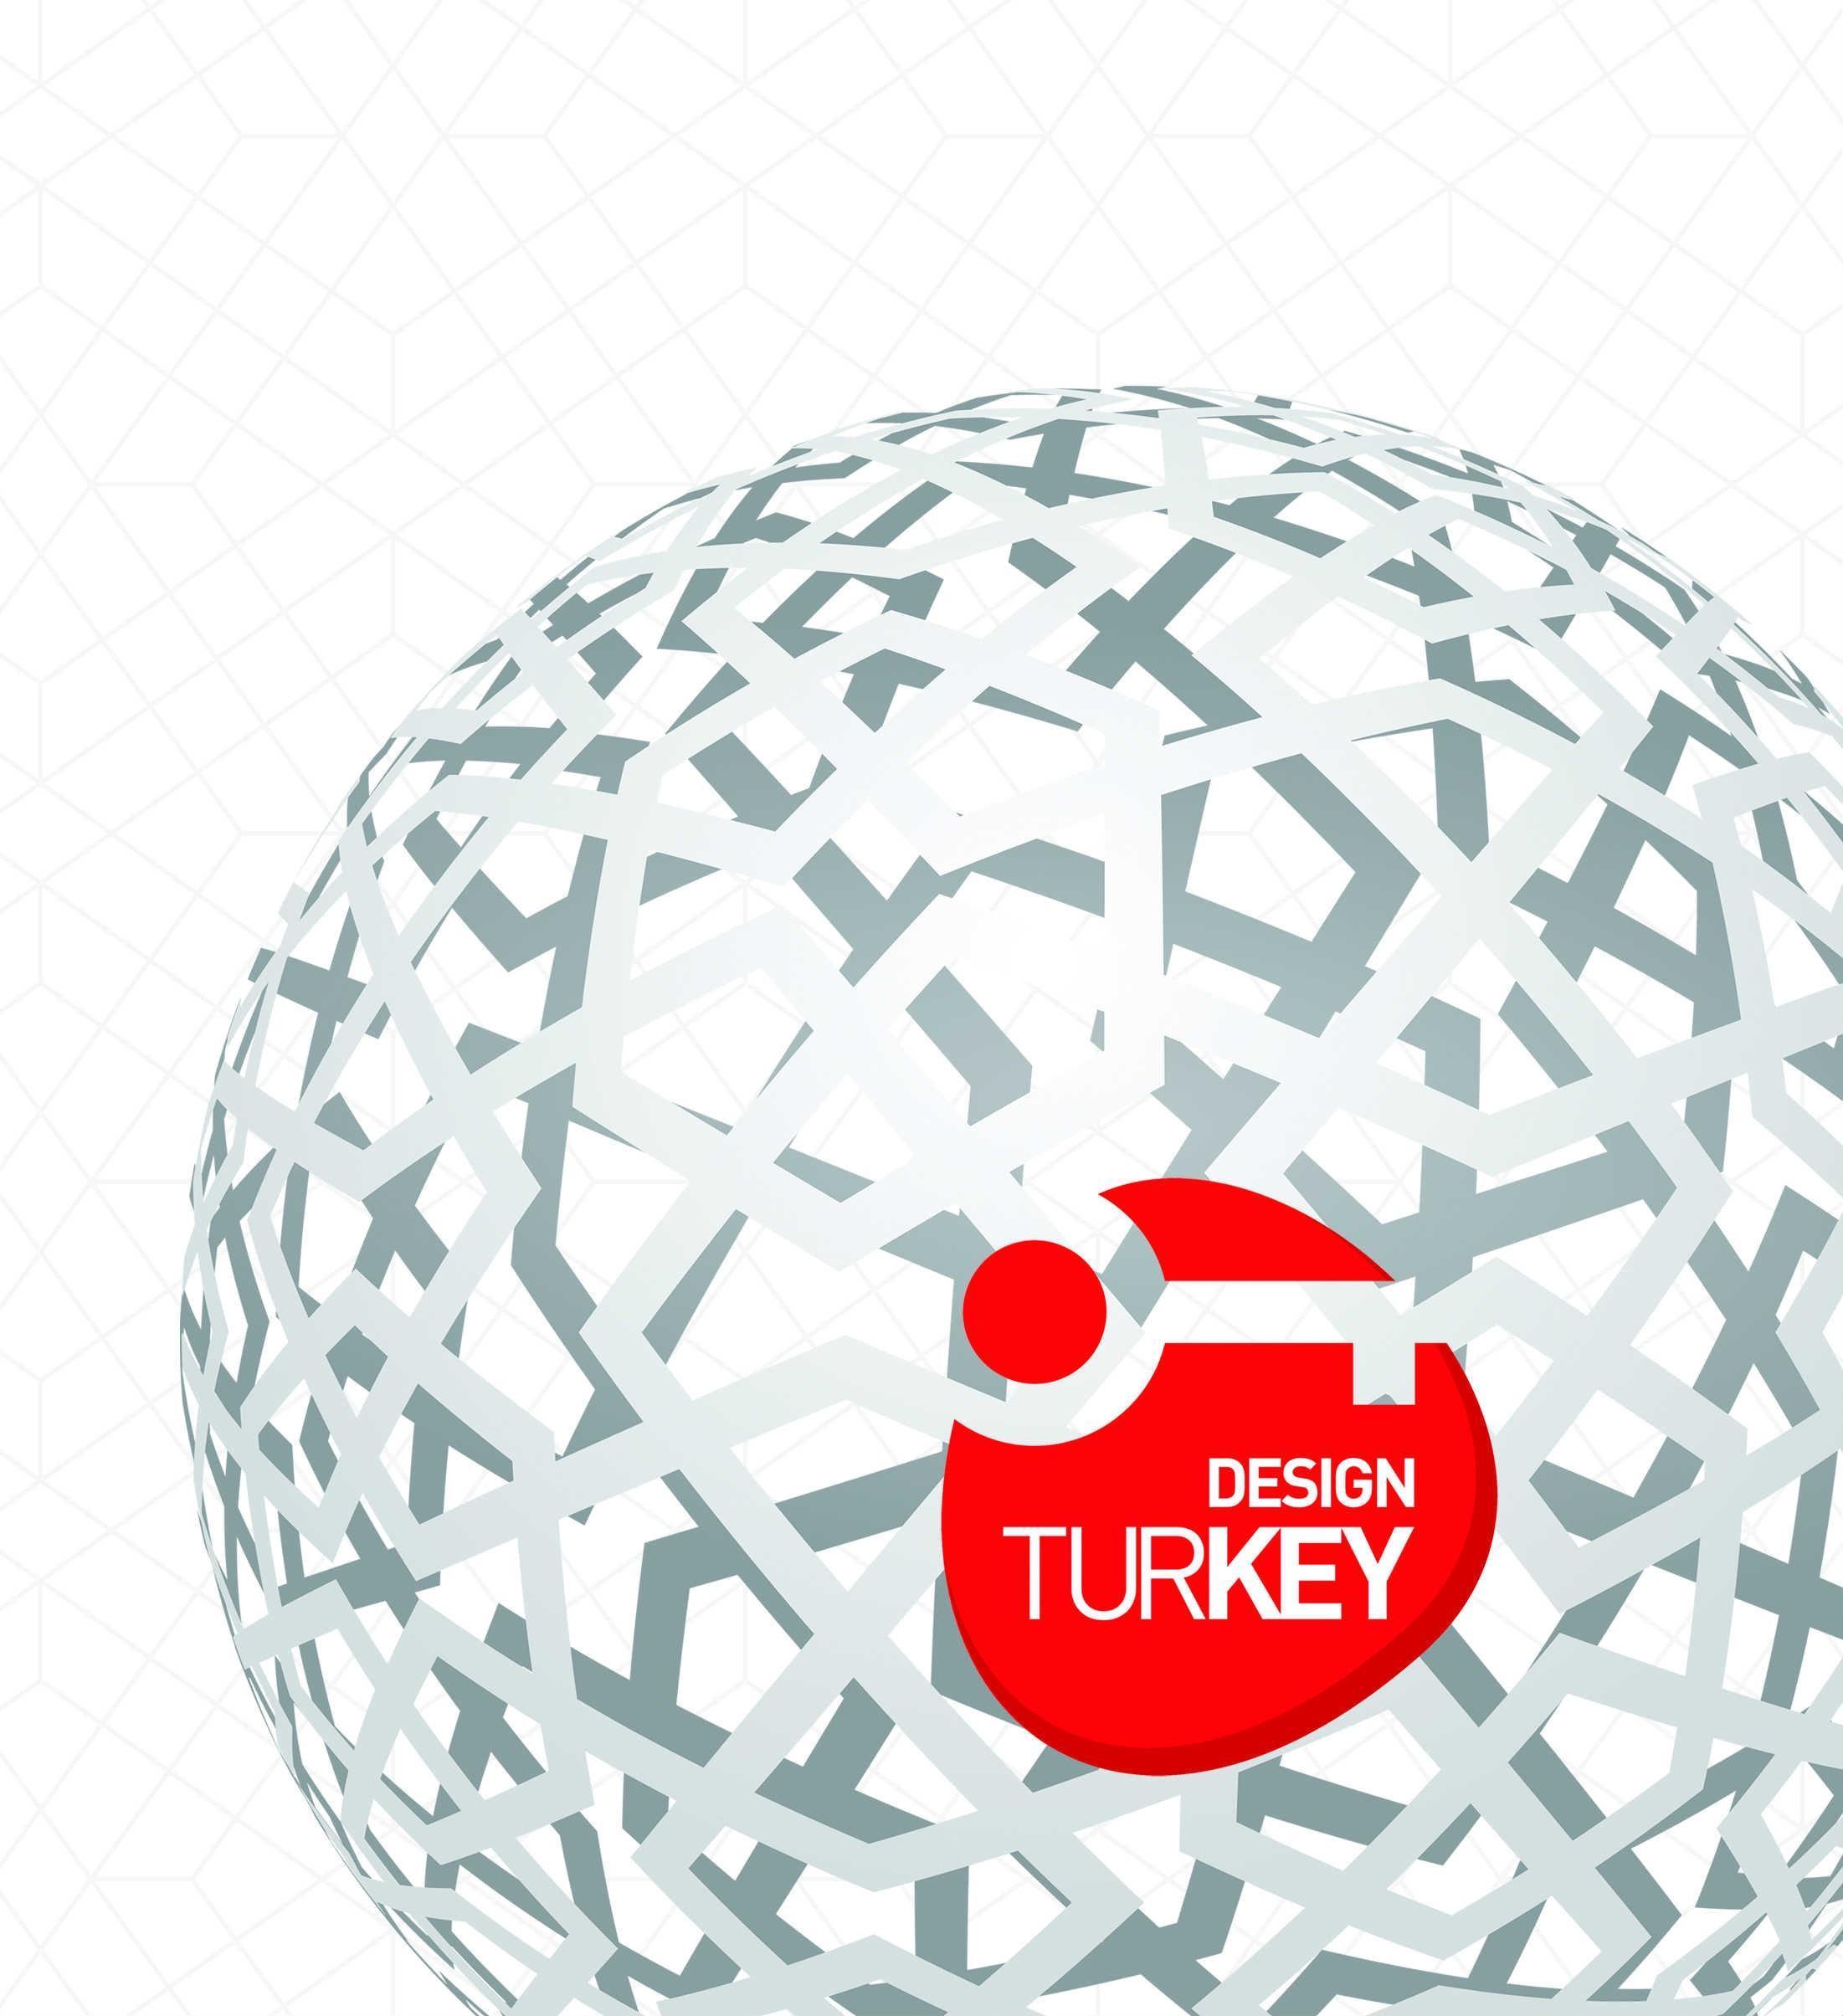 Design Turkey Endüstriyel Tasarım Ödülleri başvurusu süresi uzatıldı